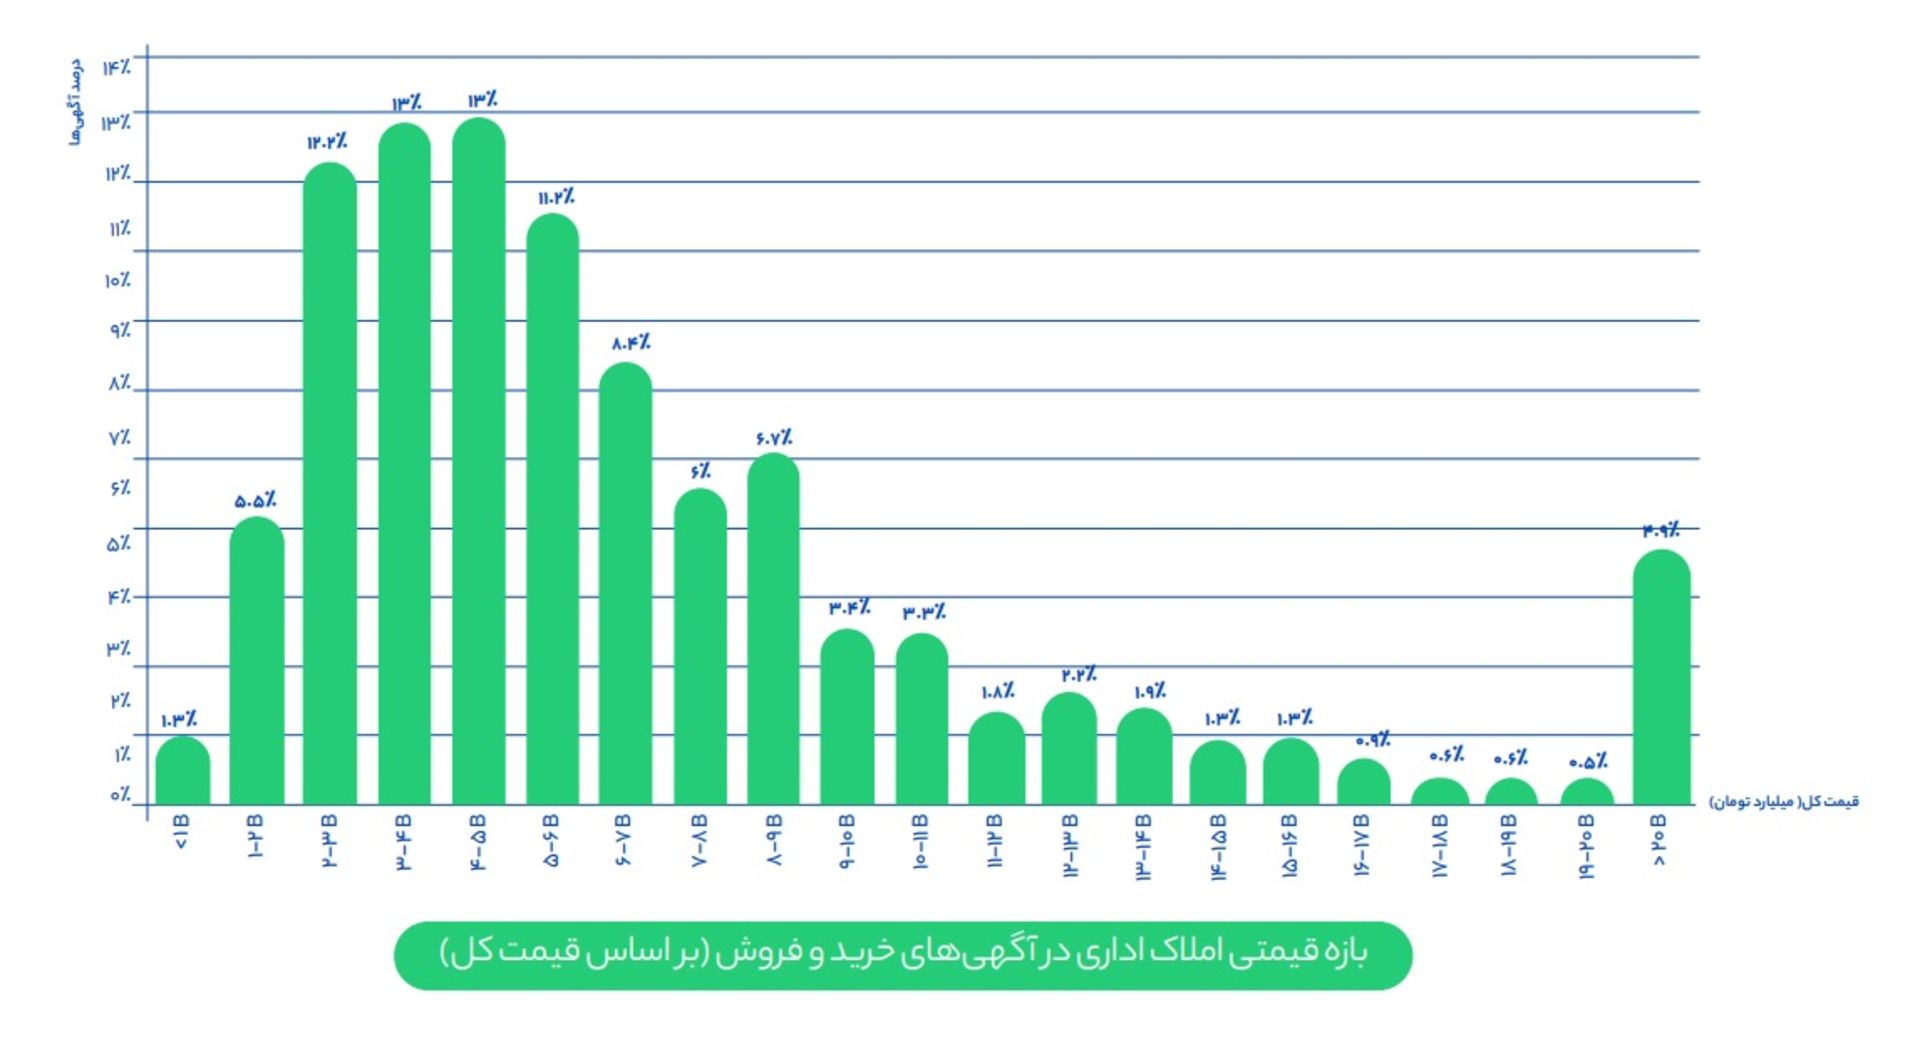 نمودار شیپور از متوسط قیمت املاک اداری در تهران